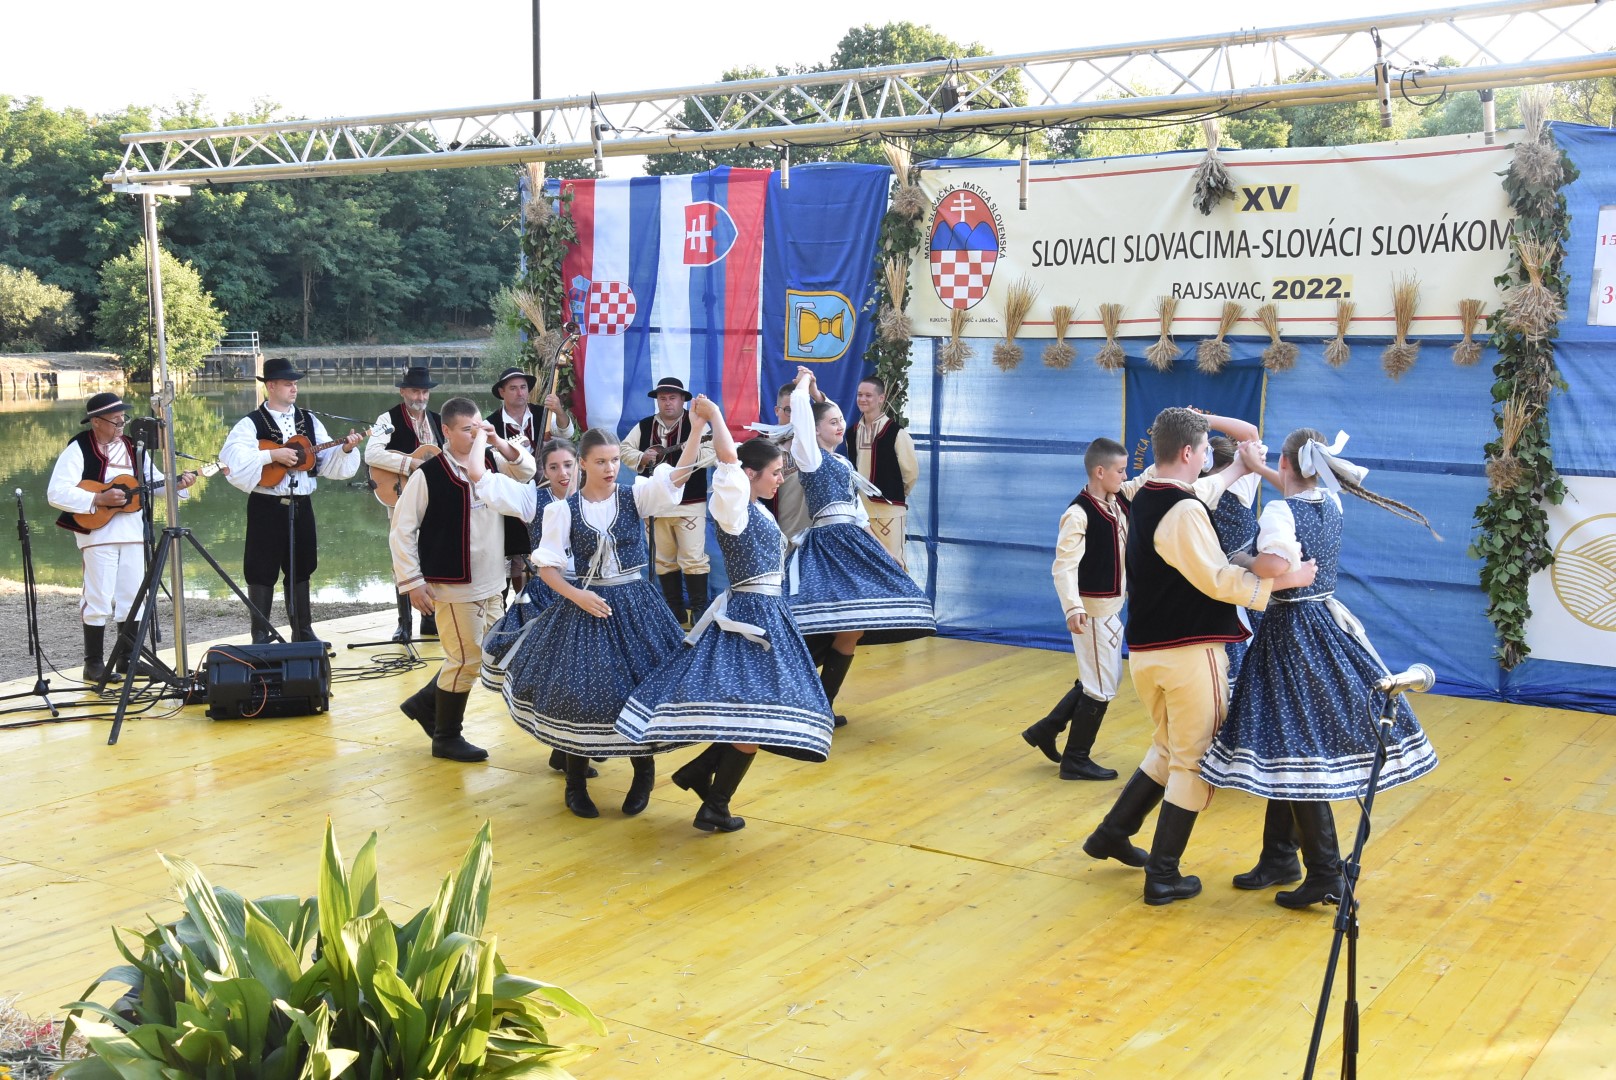 Požega.eu | Pjesme, plesovi i običaji svojih krajeva u narodnim nošnjama na amfiteatru Zelene lagune u Rajsavcu /FOTOGALERIJA/